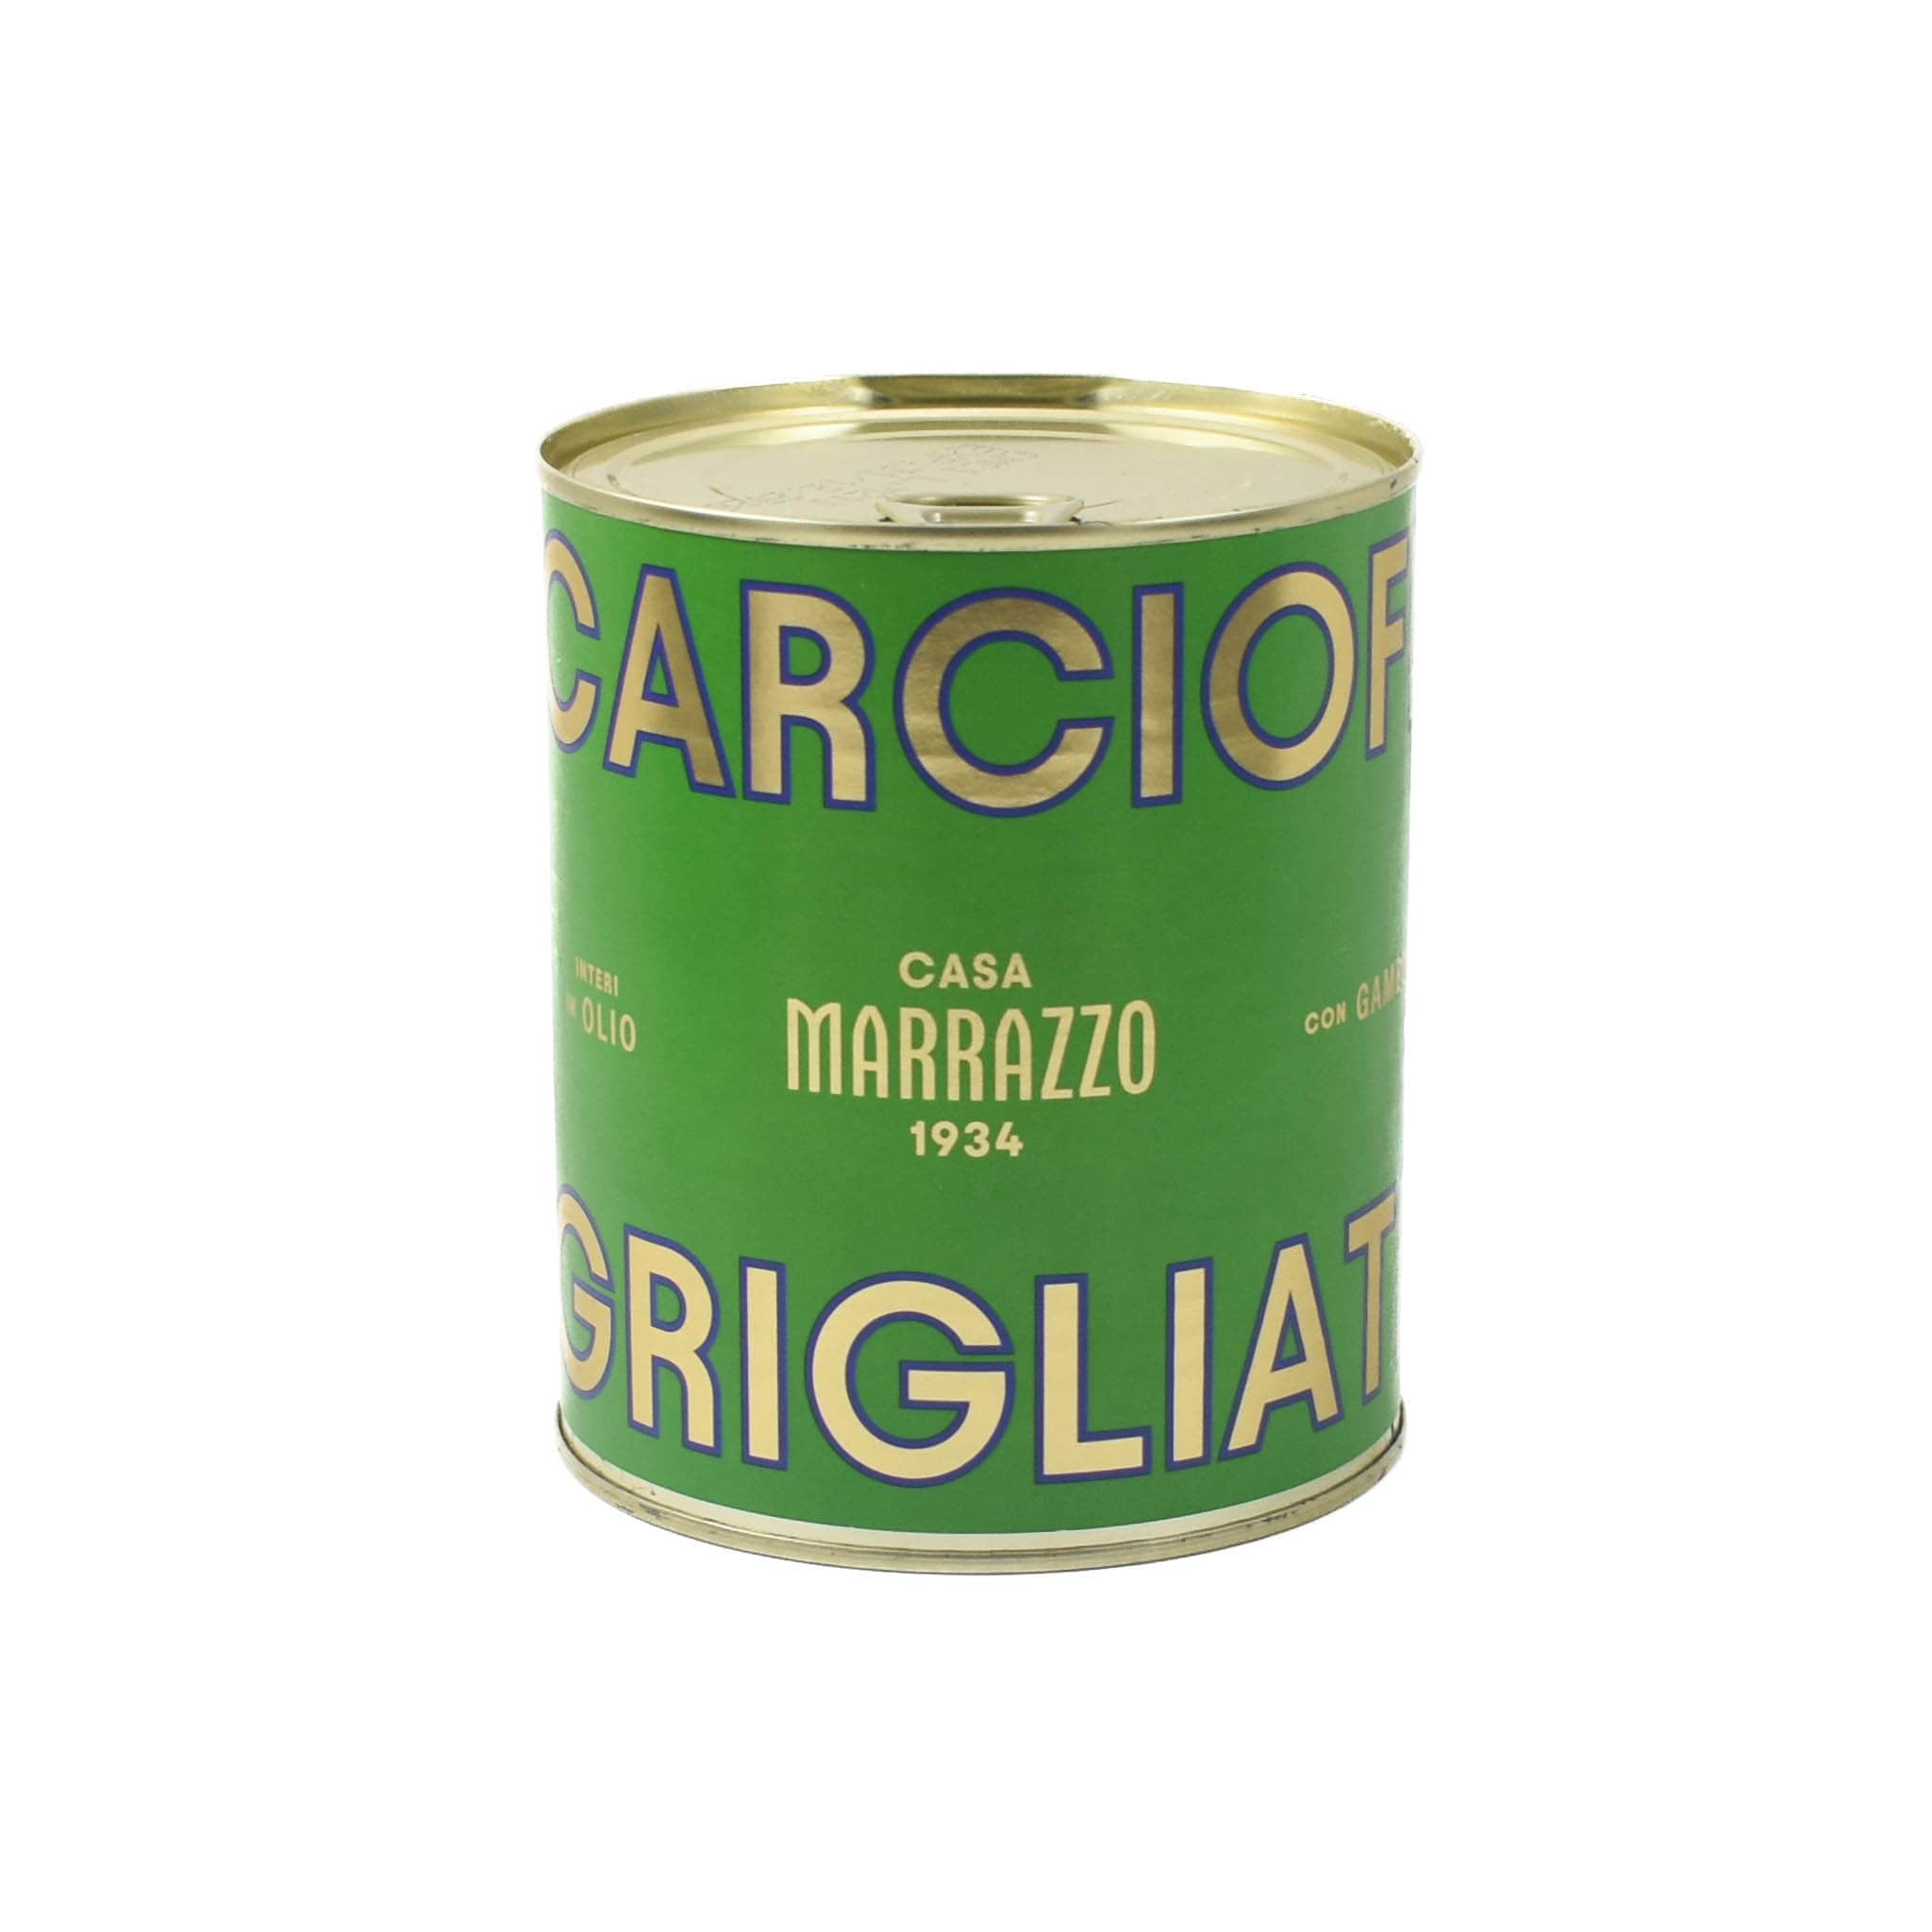 Casa Marrazzo Grilled Whole Artichokes in Oil, 750g